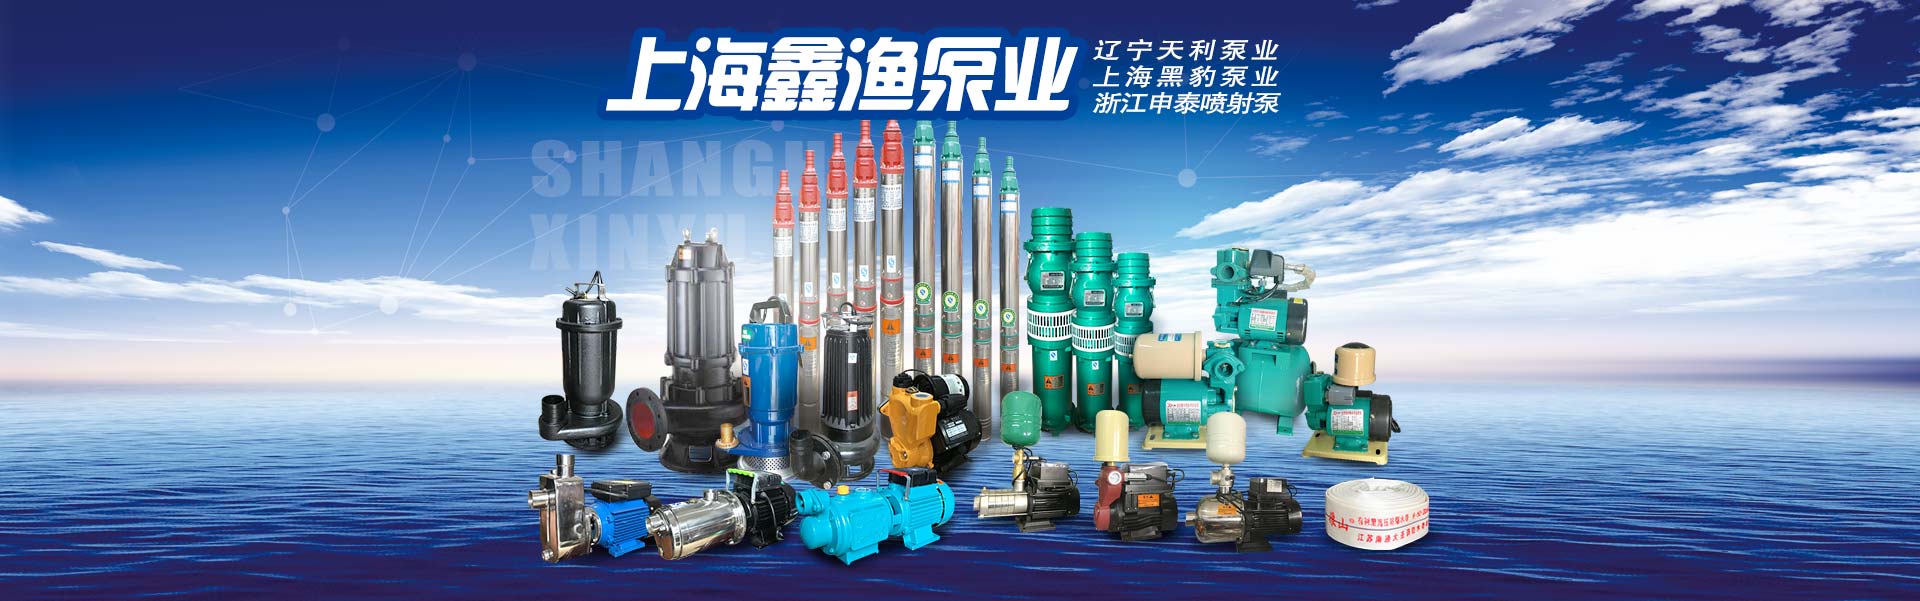 哈尔滨市北环商城新威乐天利泵业经销部产品宣传第4图